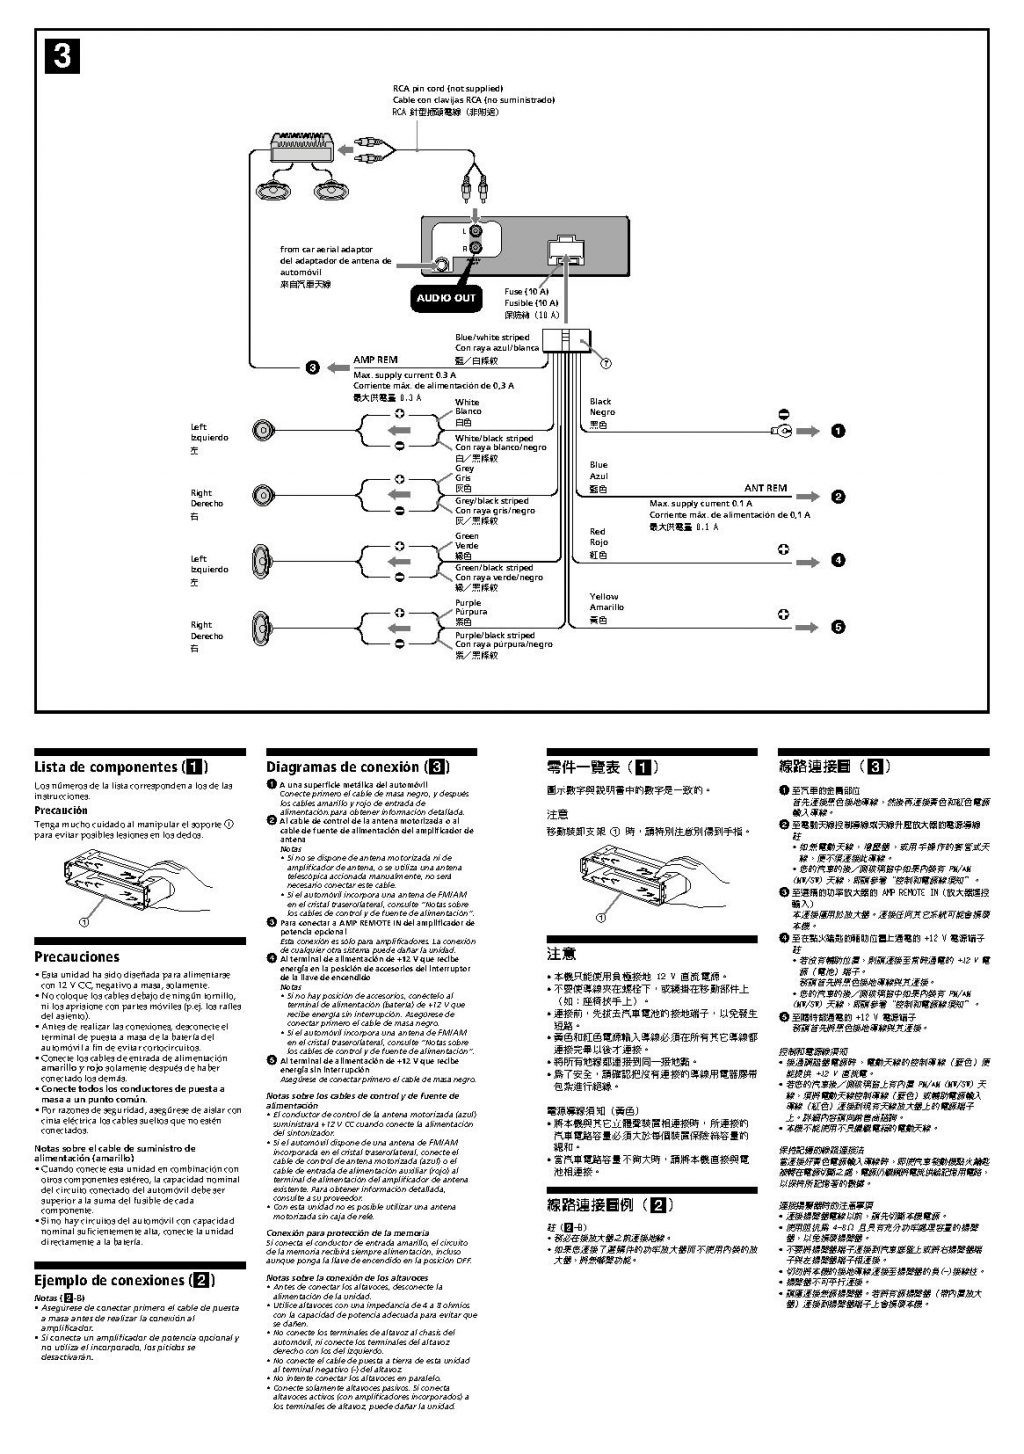 sony cdx gt66upw wiring diagram electrical work wiring diagram u2022 rh wiringdiagramshop today EVO Wiring Diagram Honda Civic Wiring Harness Diagram